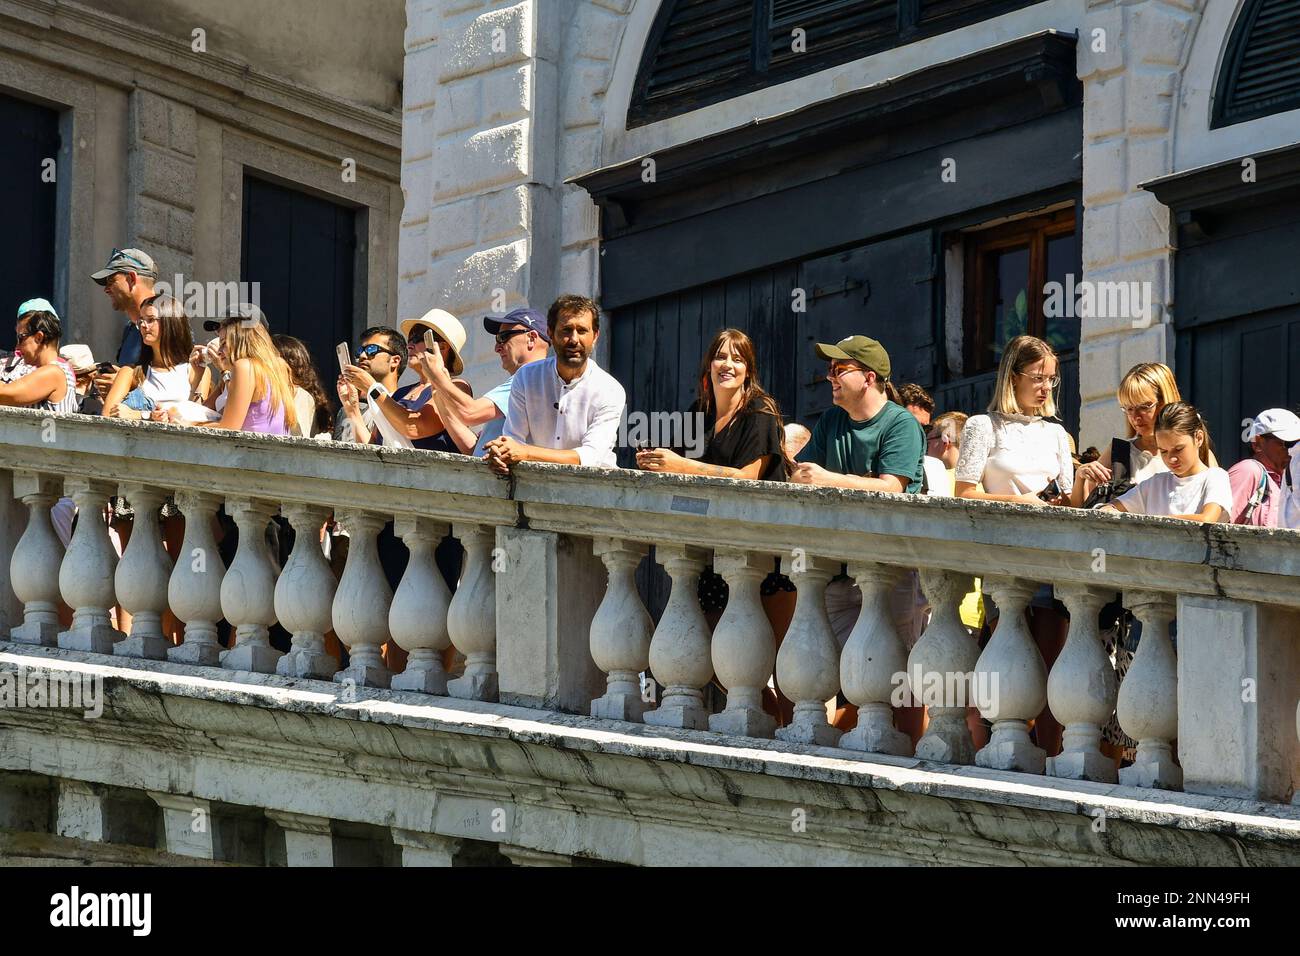 The TV presenter Marco Di Buono on the Rialto Bridge crowded with tourists during a Rai service, Venice, Veneto, Italy Stock Photo